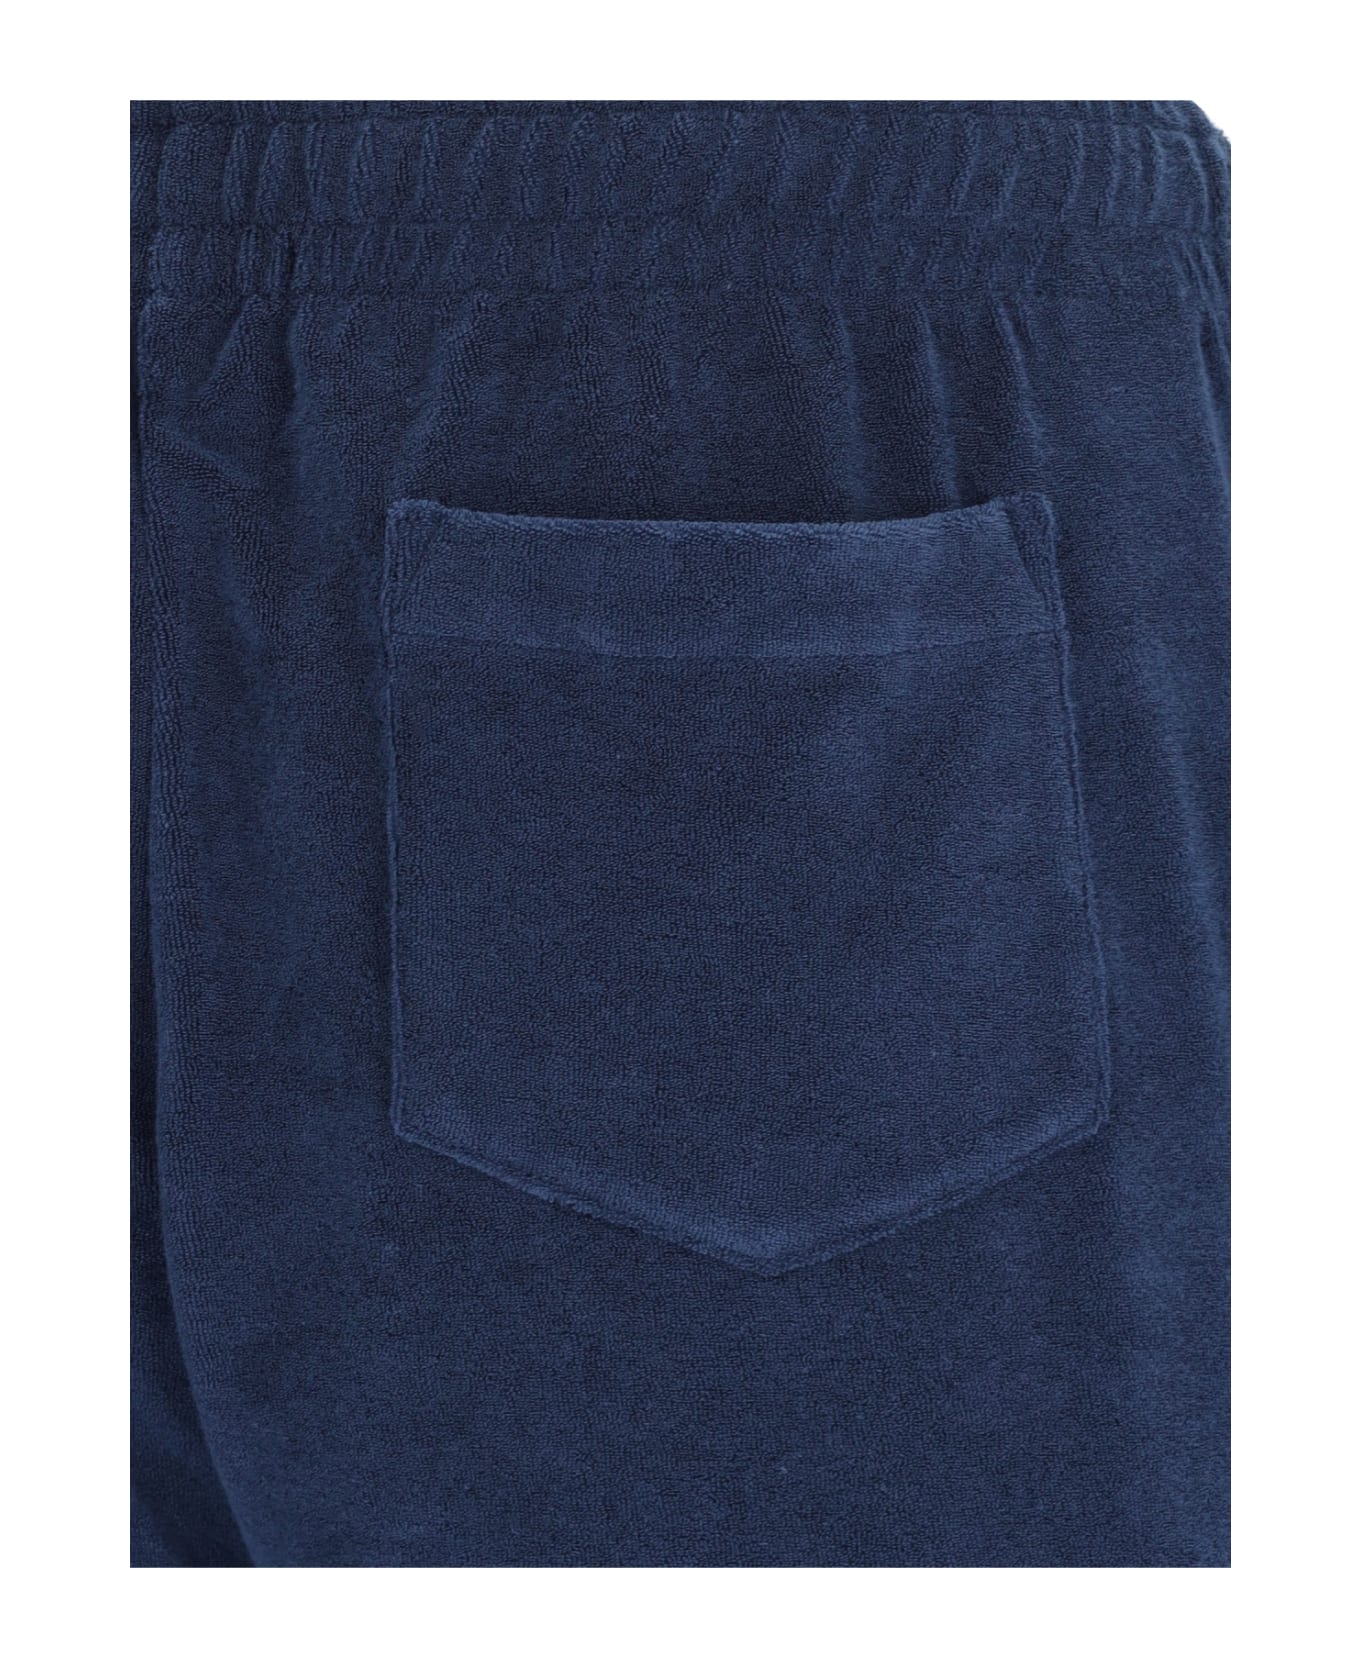 Polo Ralph Lauren Terry Shorts - Blue